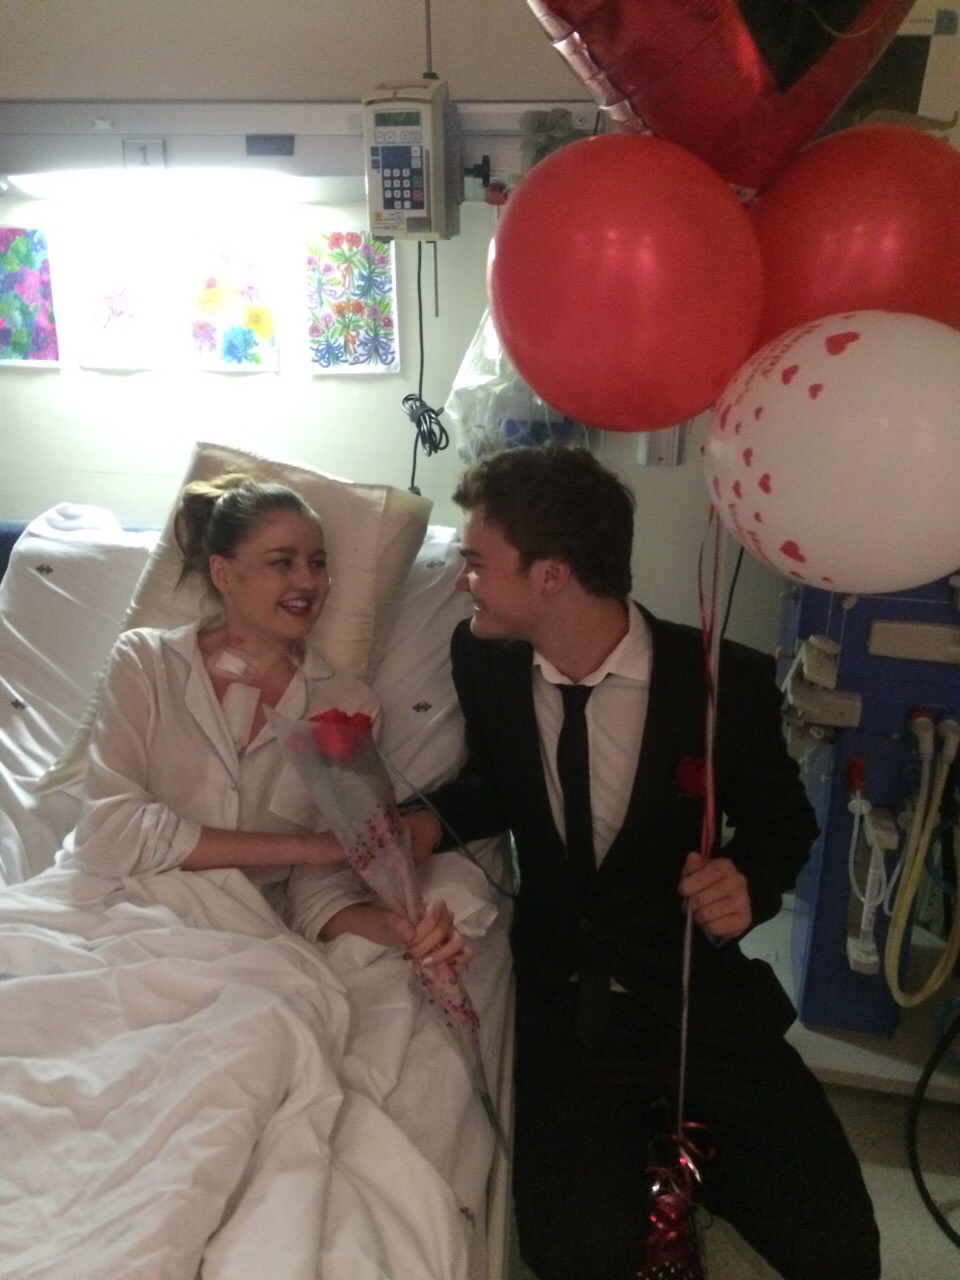 Jenna in hospital